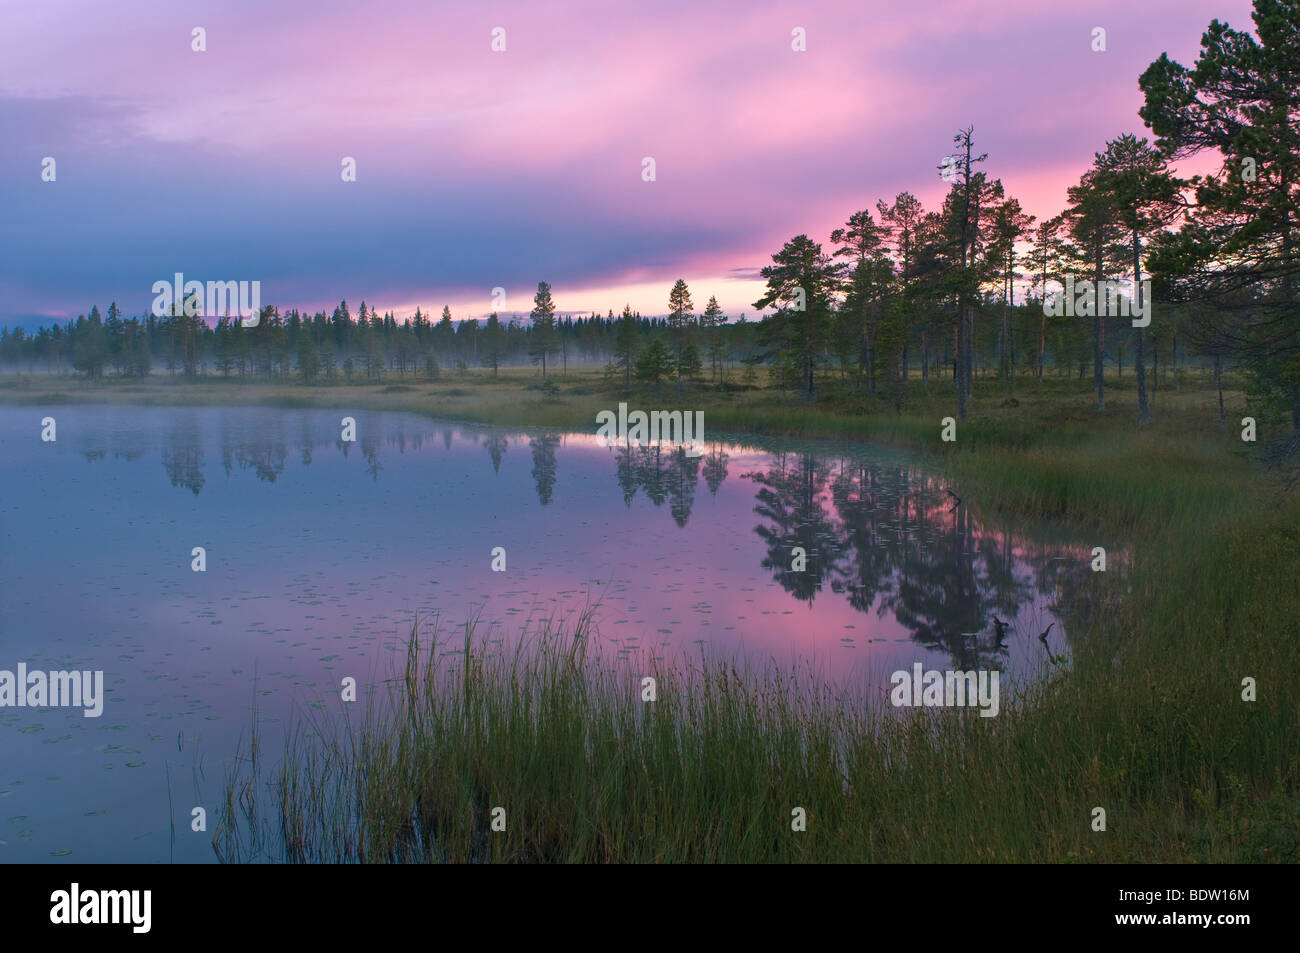 abendstimmung bei seenlandschaft bei sonnenuntergang, lappland, schweden, evening mood with lake scenery at sunset, sweden Stock Photo